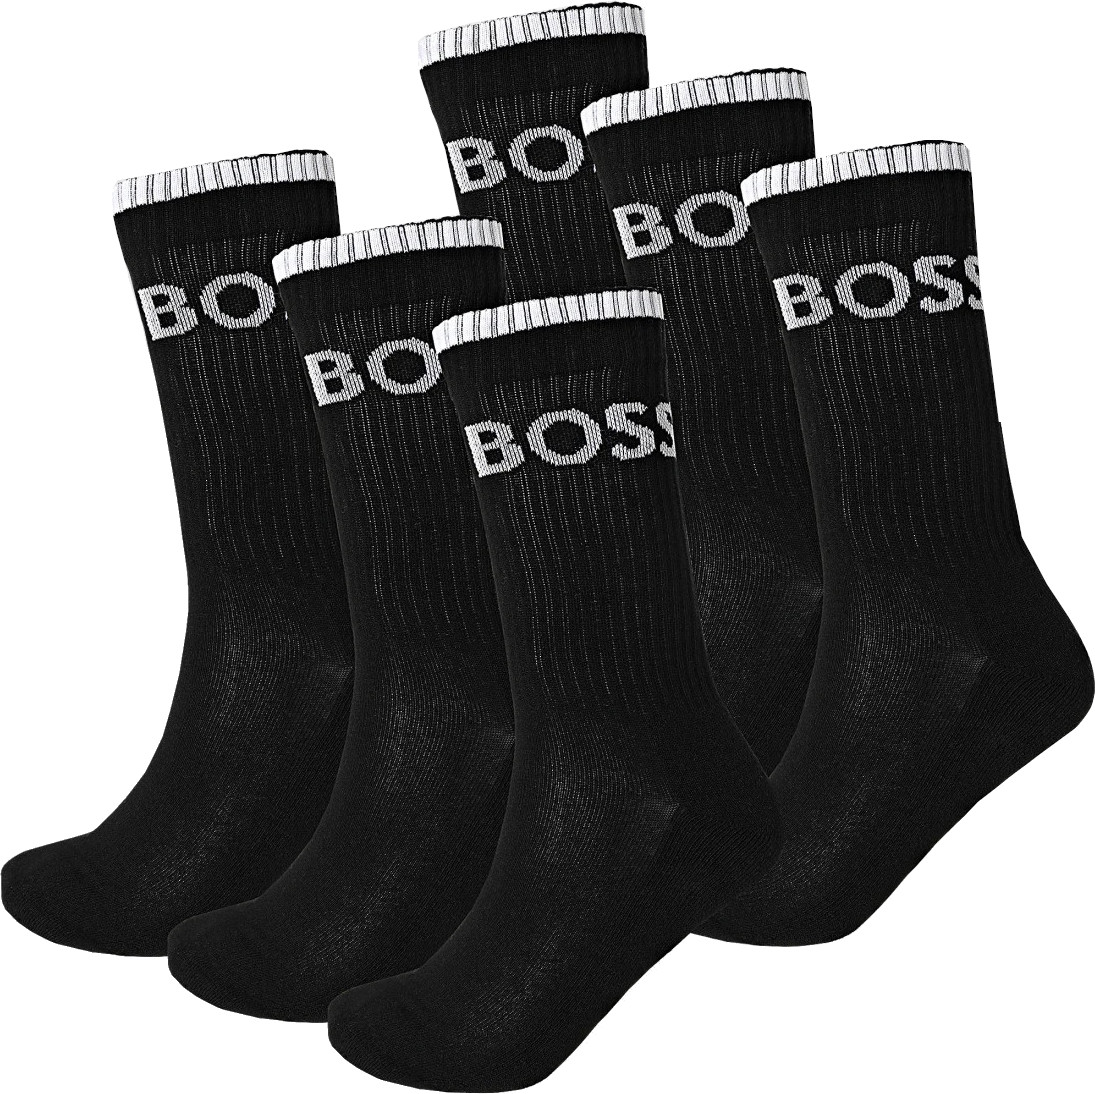 Hugo Boss 6 PACK - pánské ponožky BOSS 50510168-001 39-42